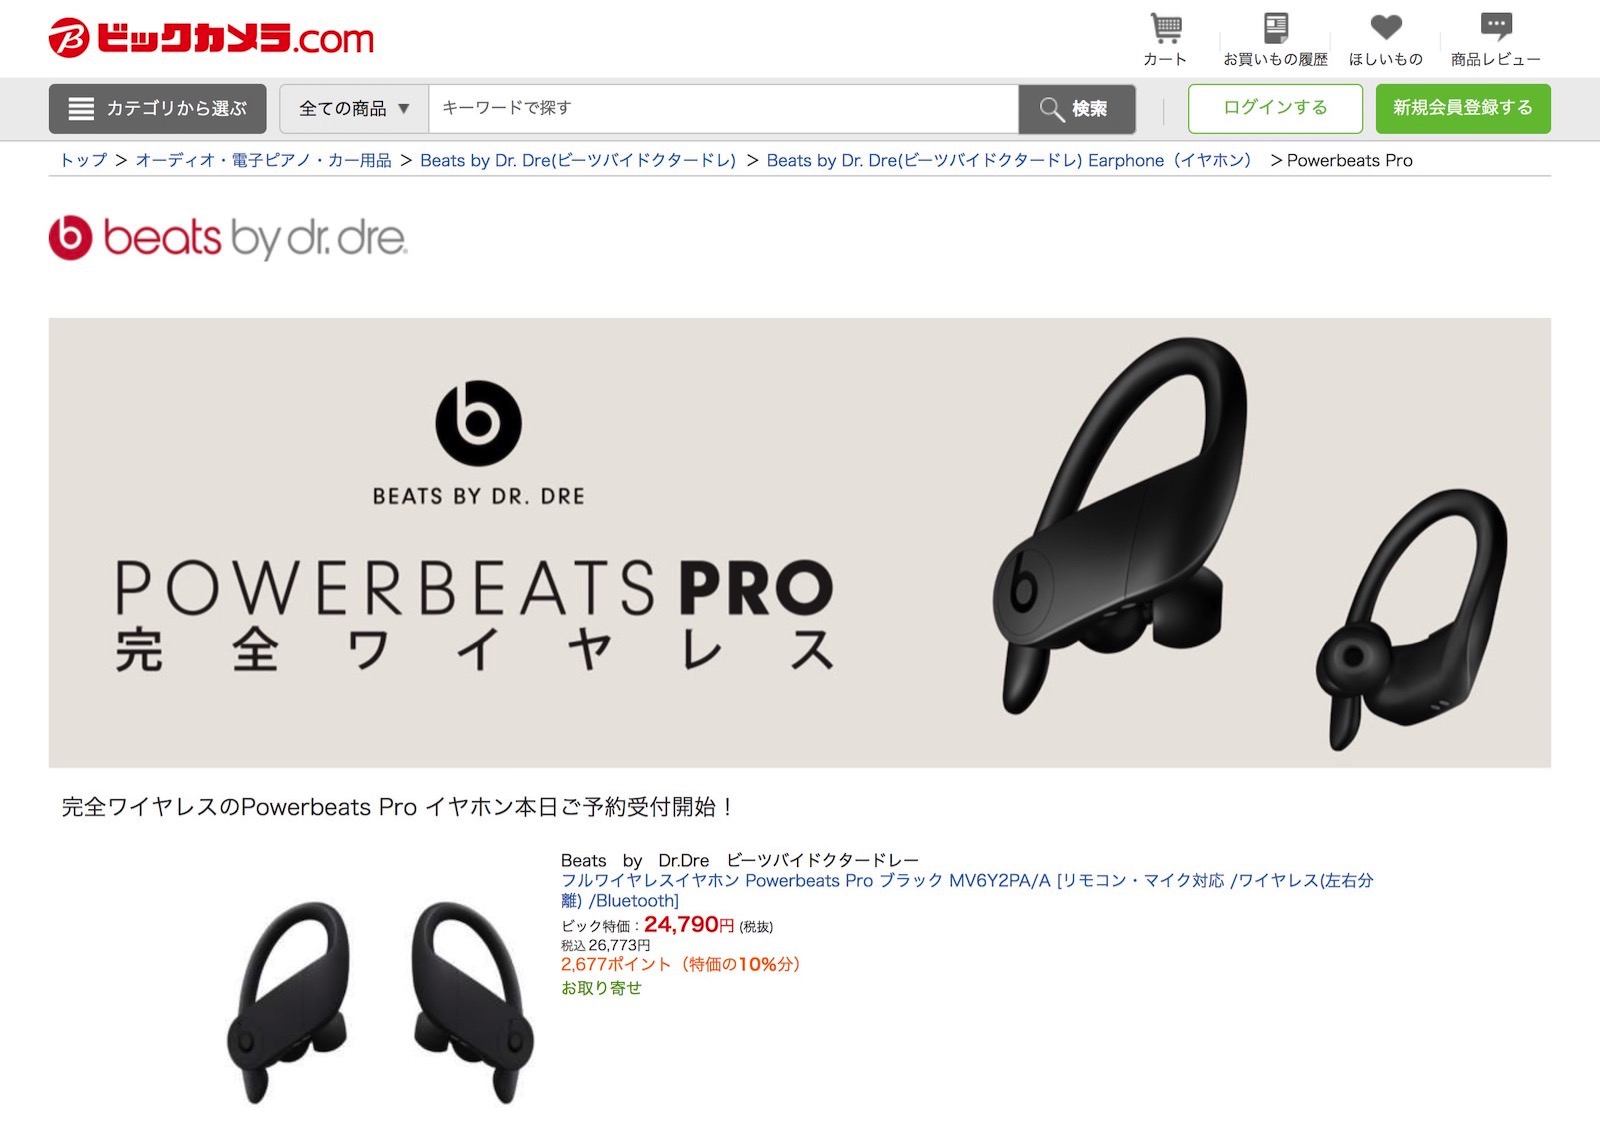 Powerbeats-pro-on-sale.jpg